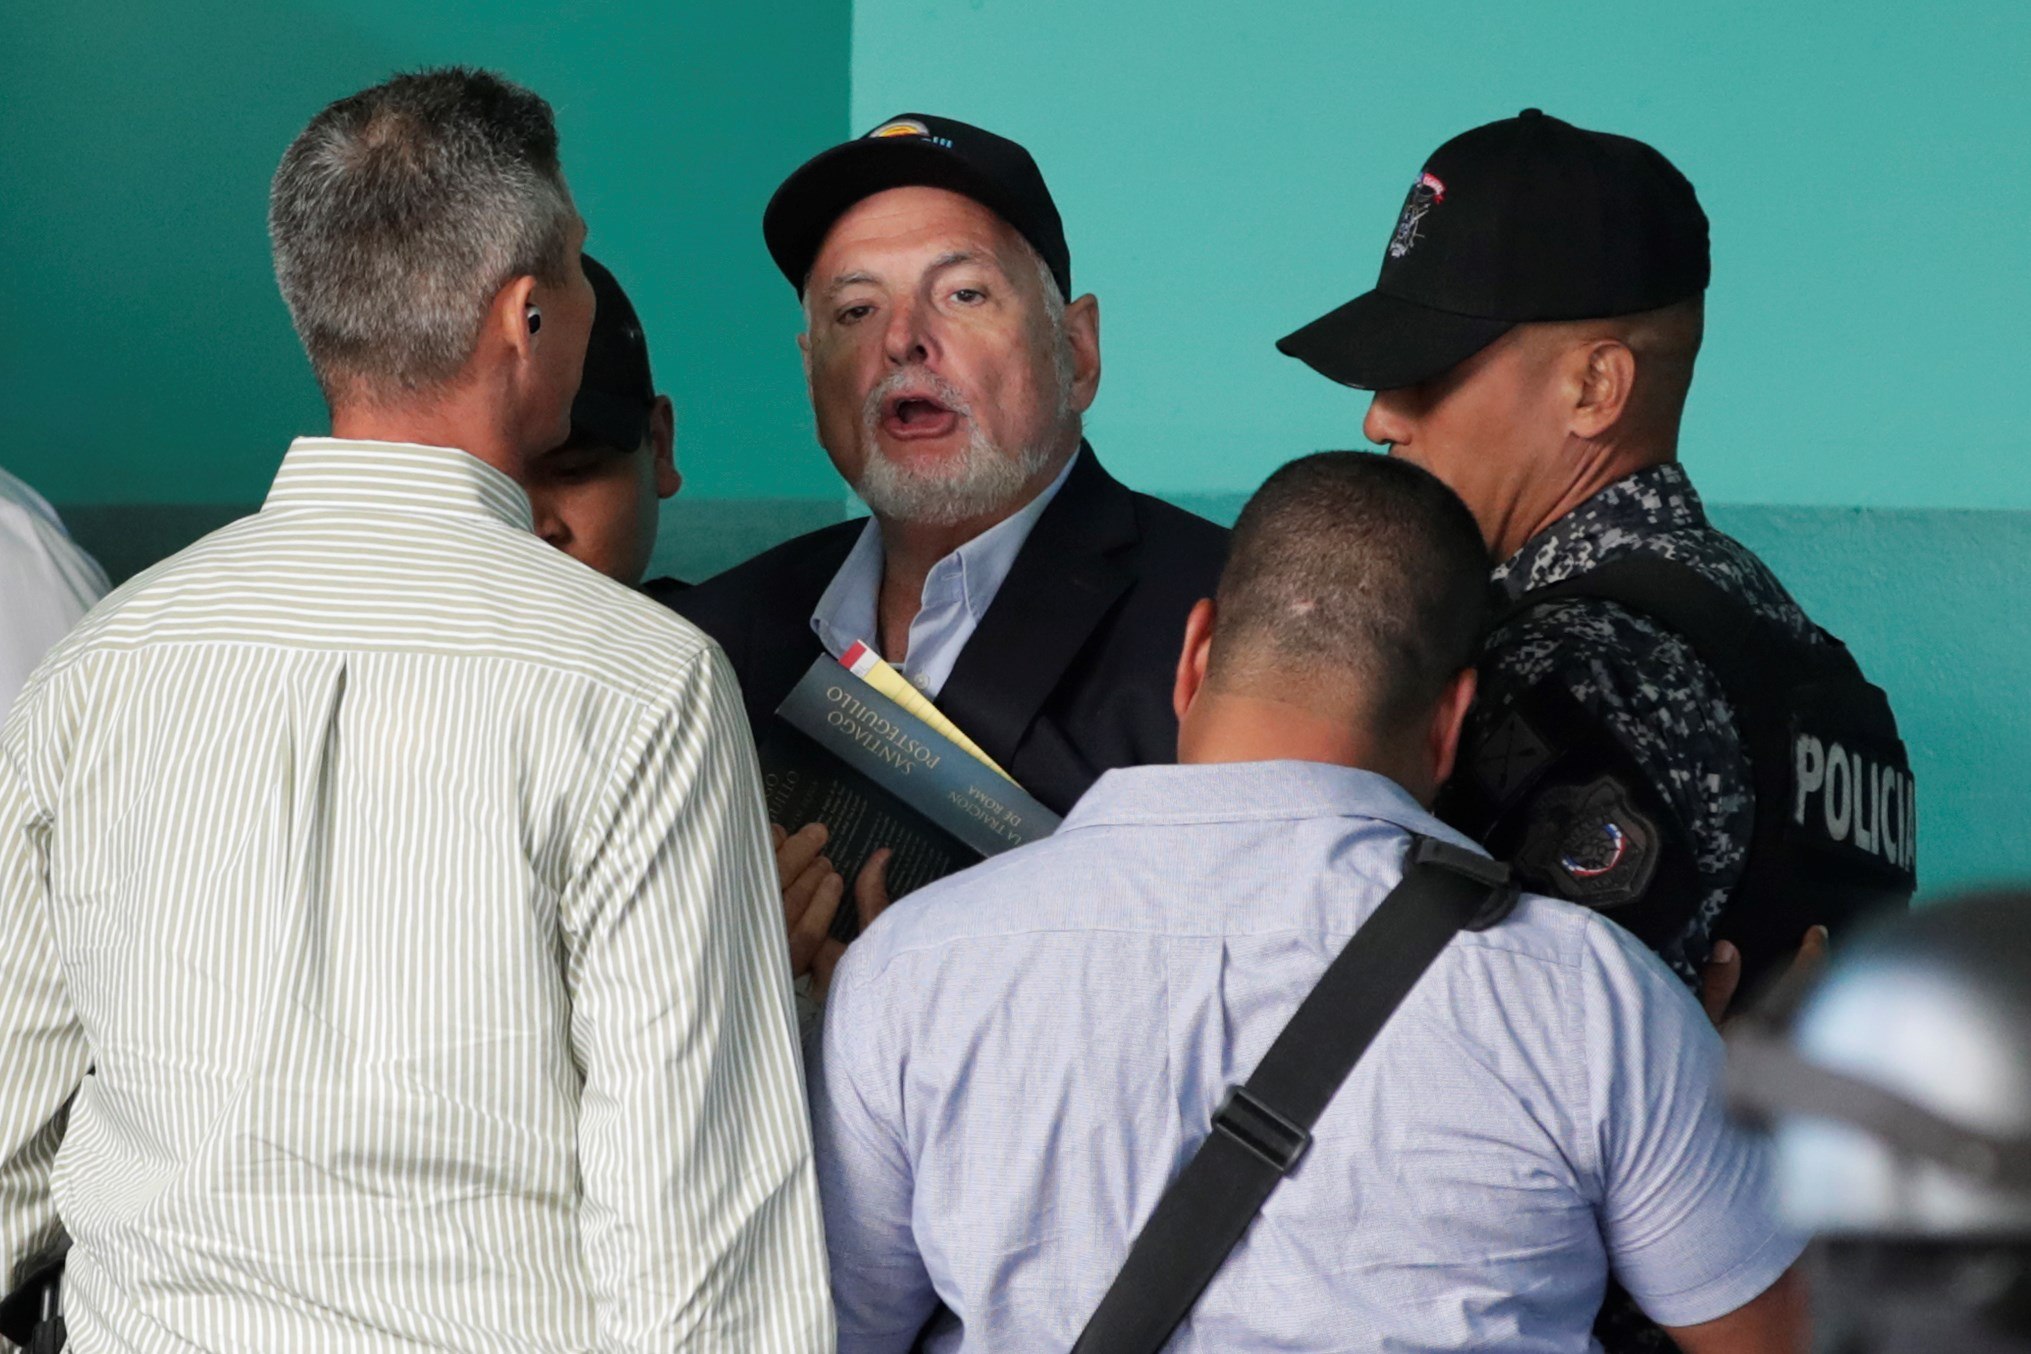 Fotografía fechada el 12 de marzo de 2019 que muestra al expresidente de Panamá, Ricardo Martinelli (c), mientras es custodiado por miembros de la Policía Nacional. (Foto Prensa Libre: EFE)